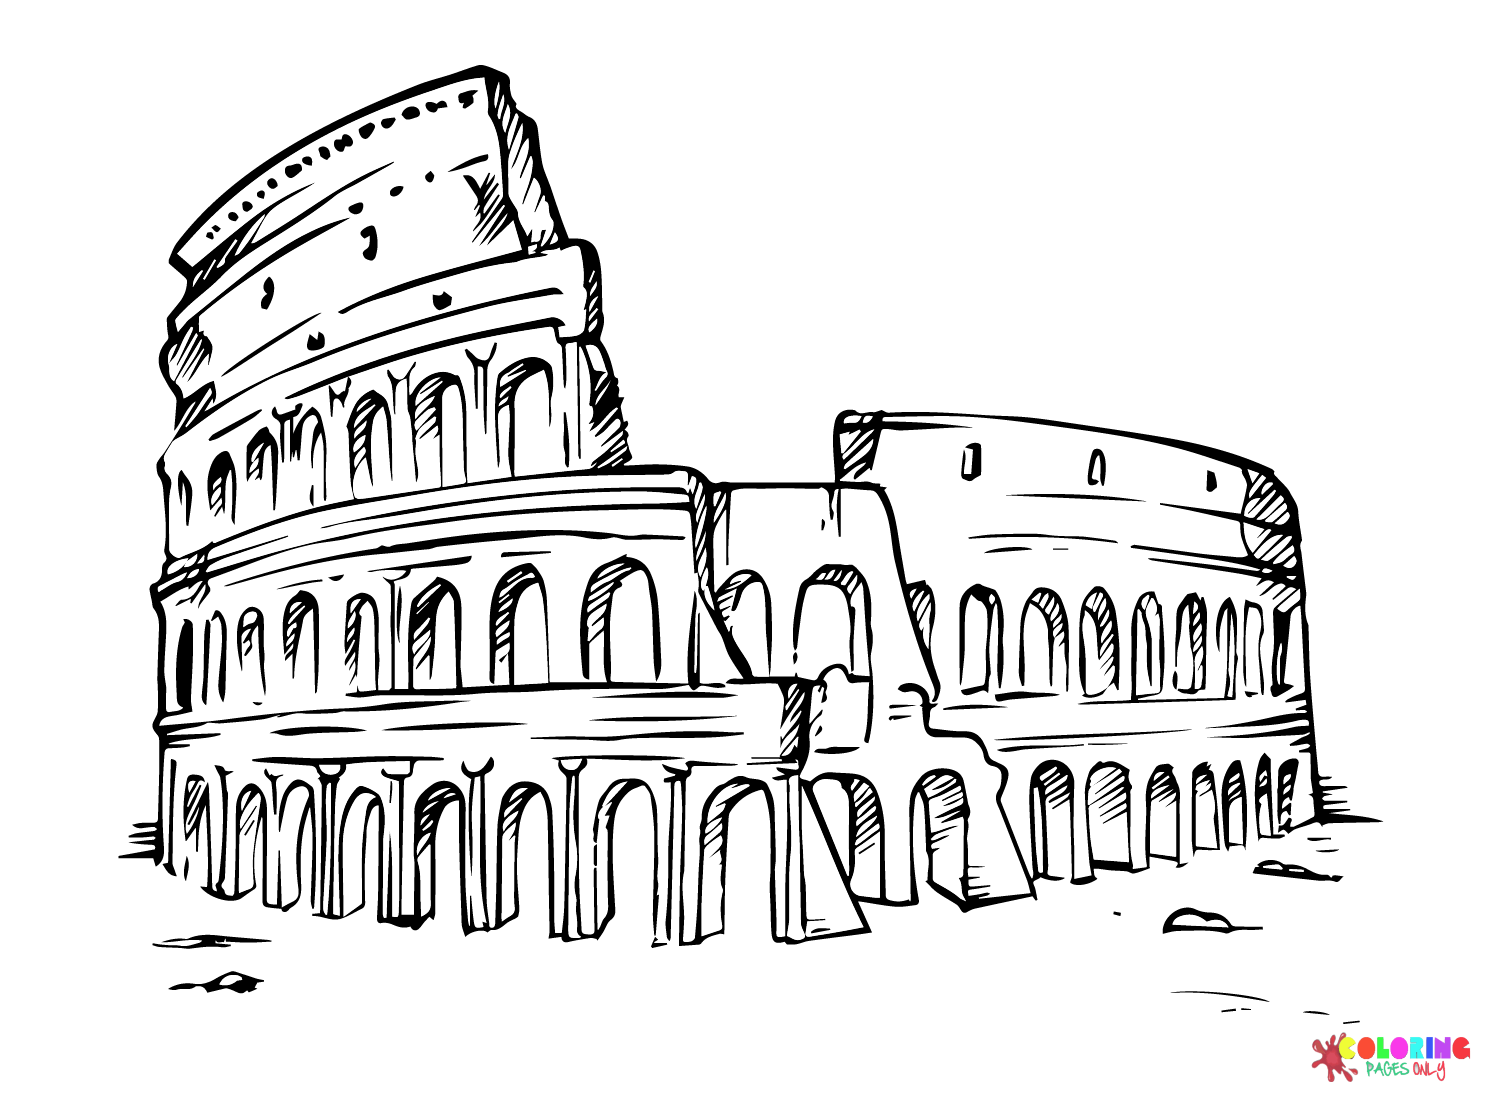 Arena Het oude Rome en het Romeinse rijk uit het oude Rome en het Romeinse rijk